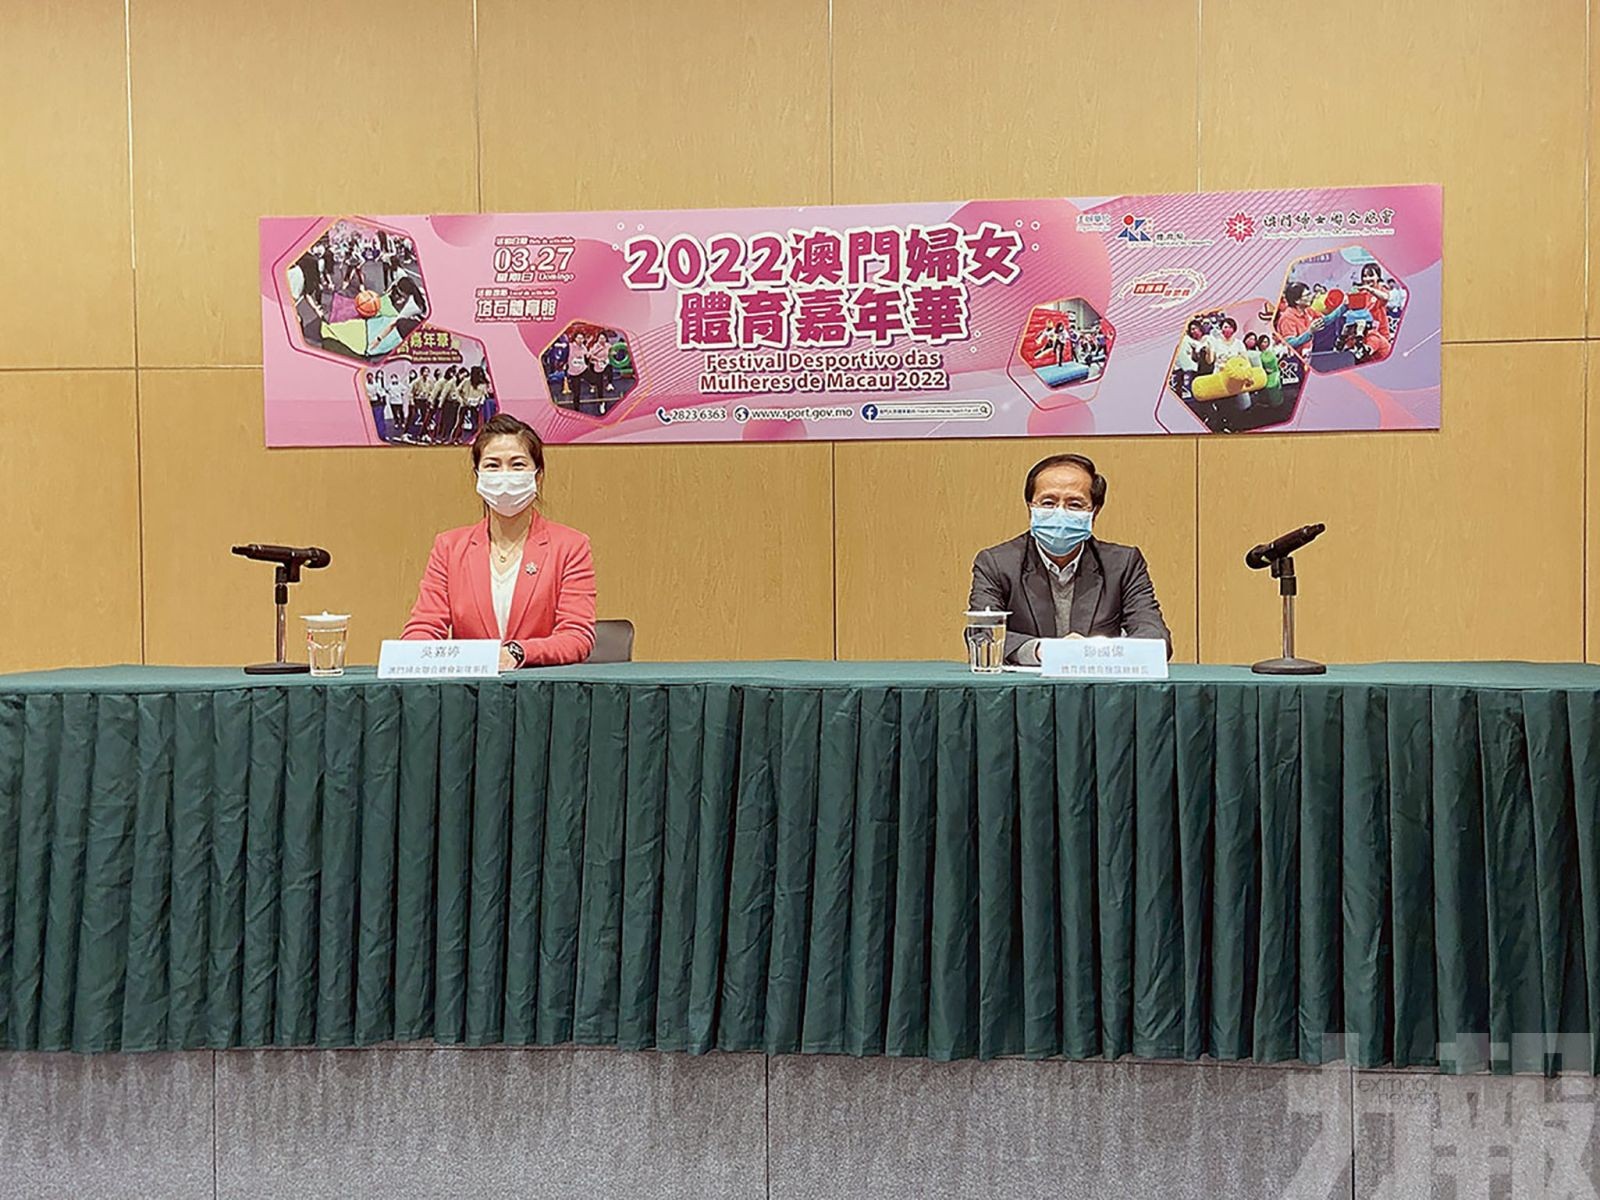 「婦女體育嘉年華」本月27日舉行